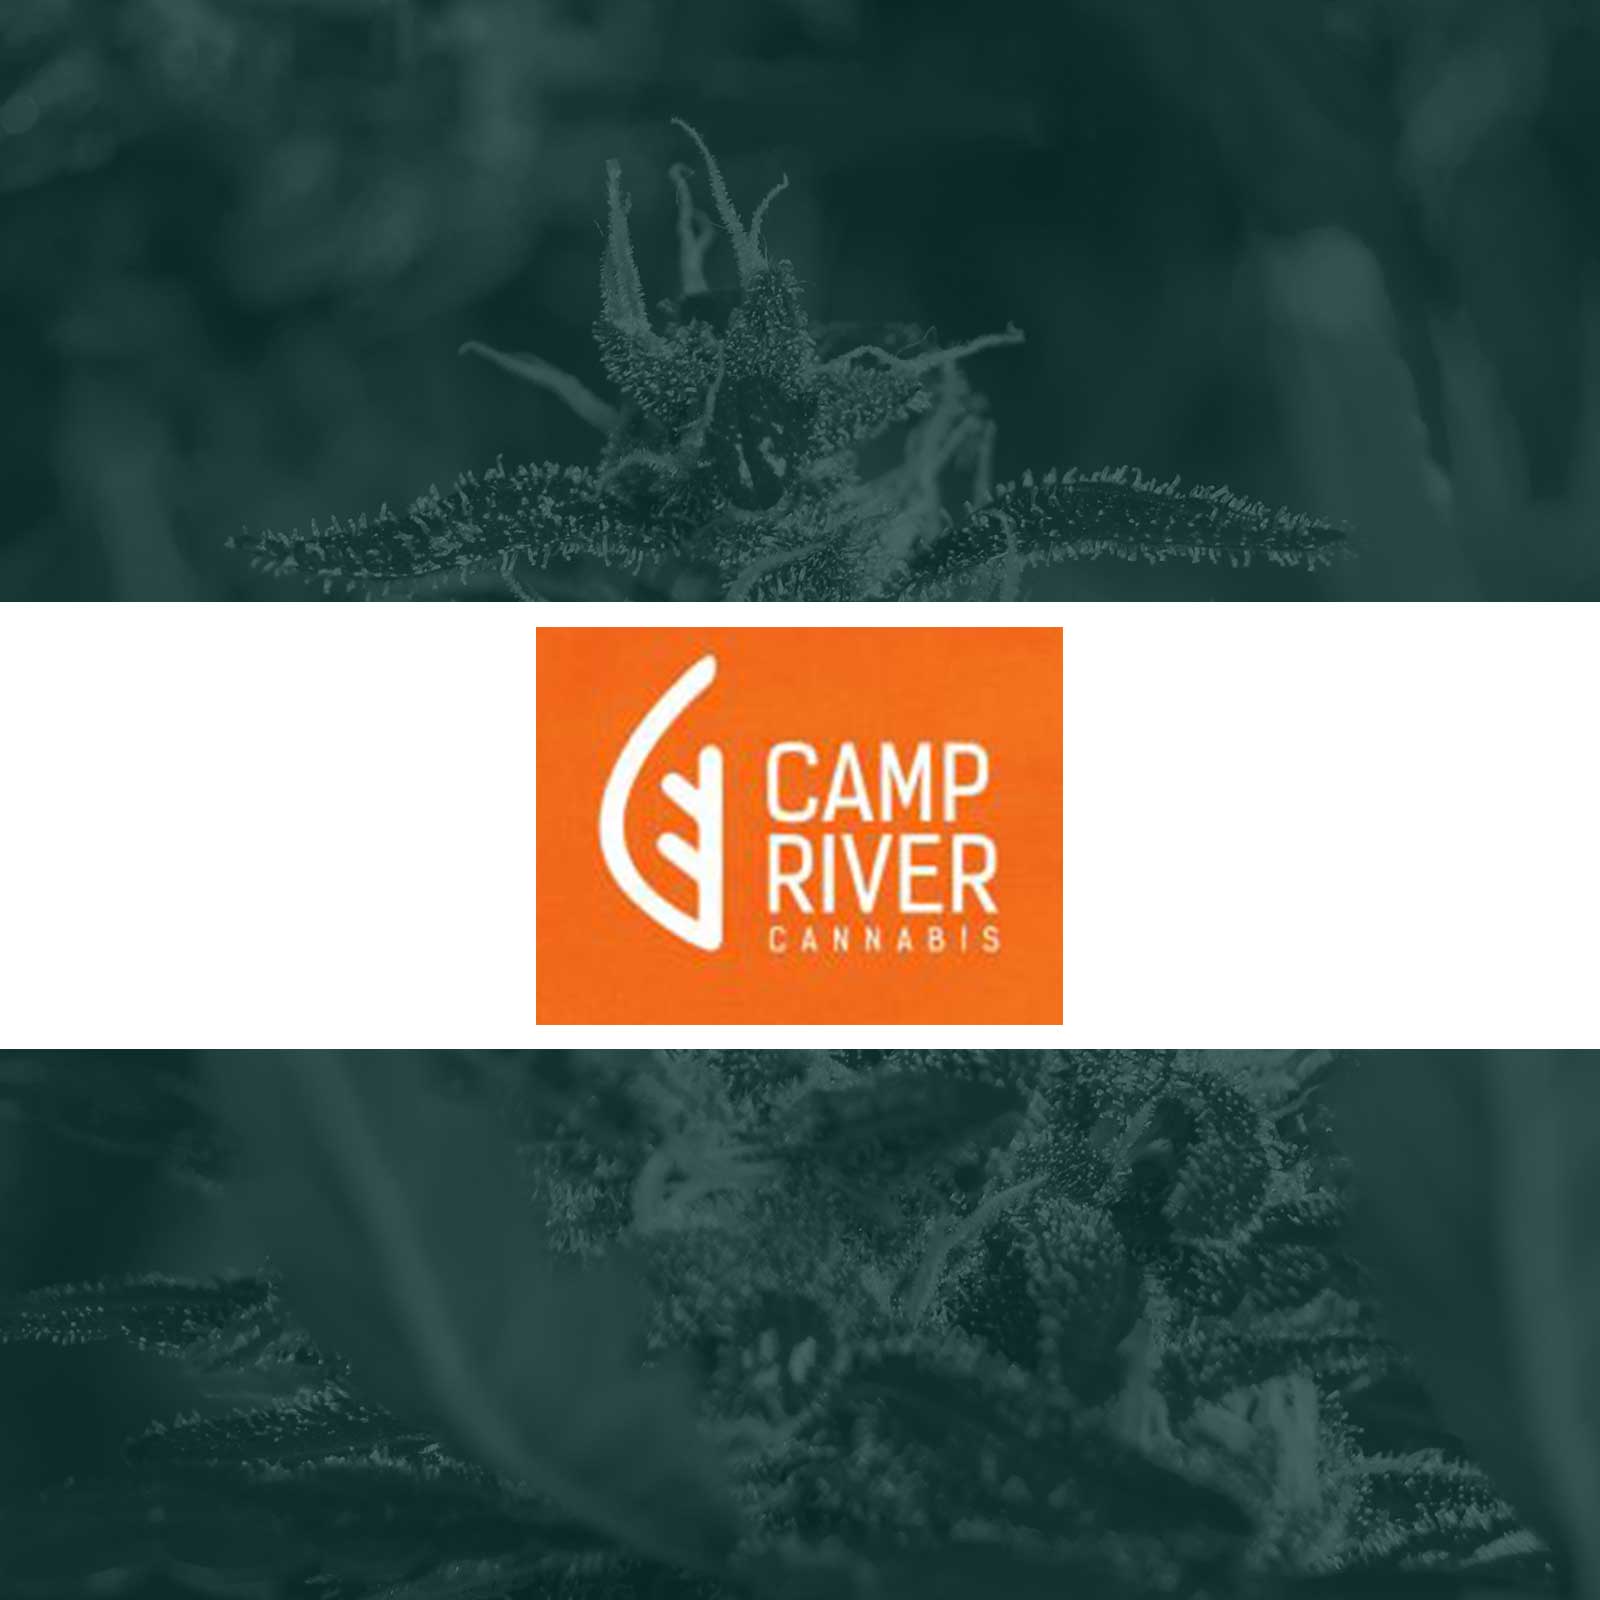 Camp River Cannabis